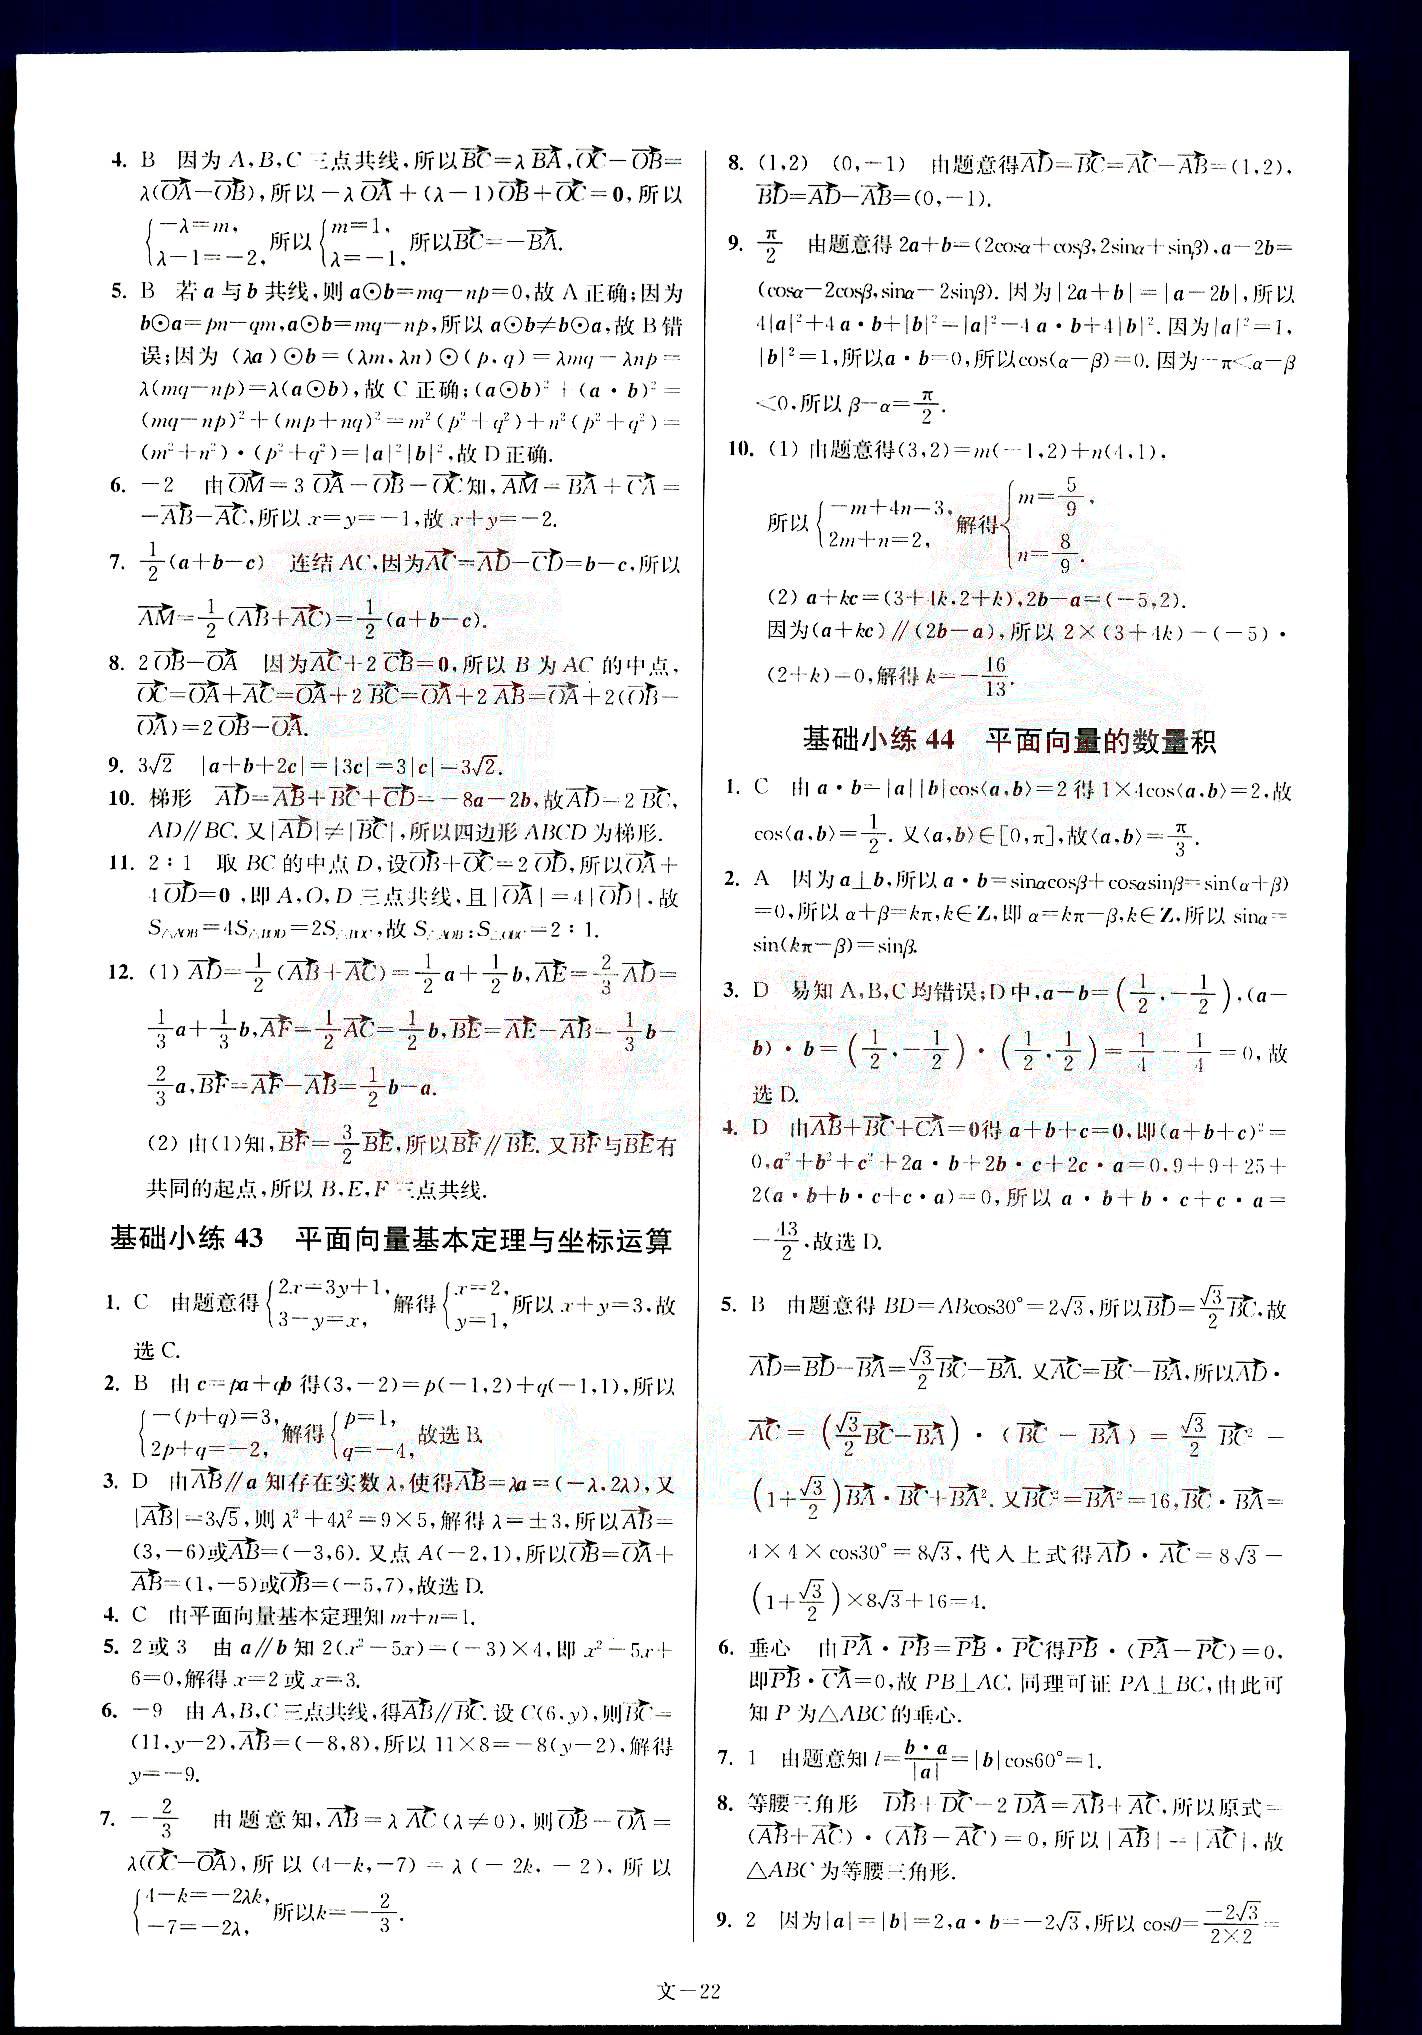 小题狂做-高考数学-文科-最基础篇南京大学出版社 第5部分 [2]